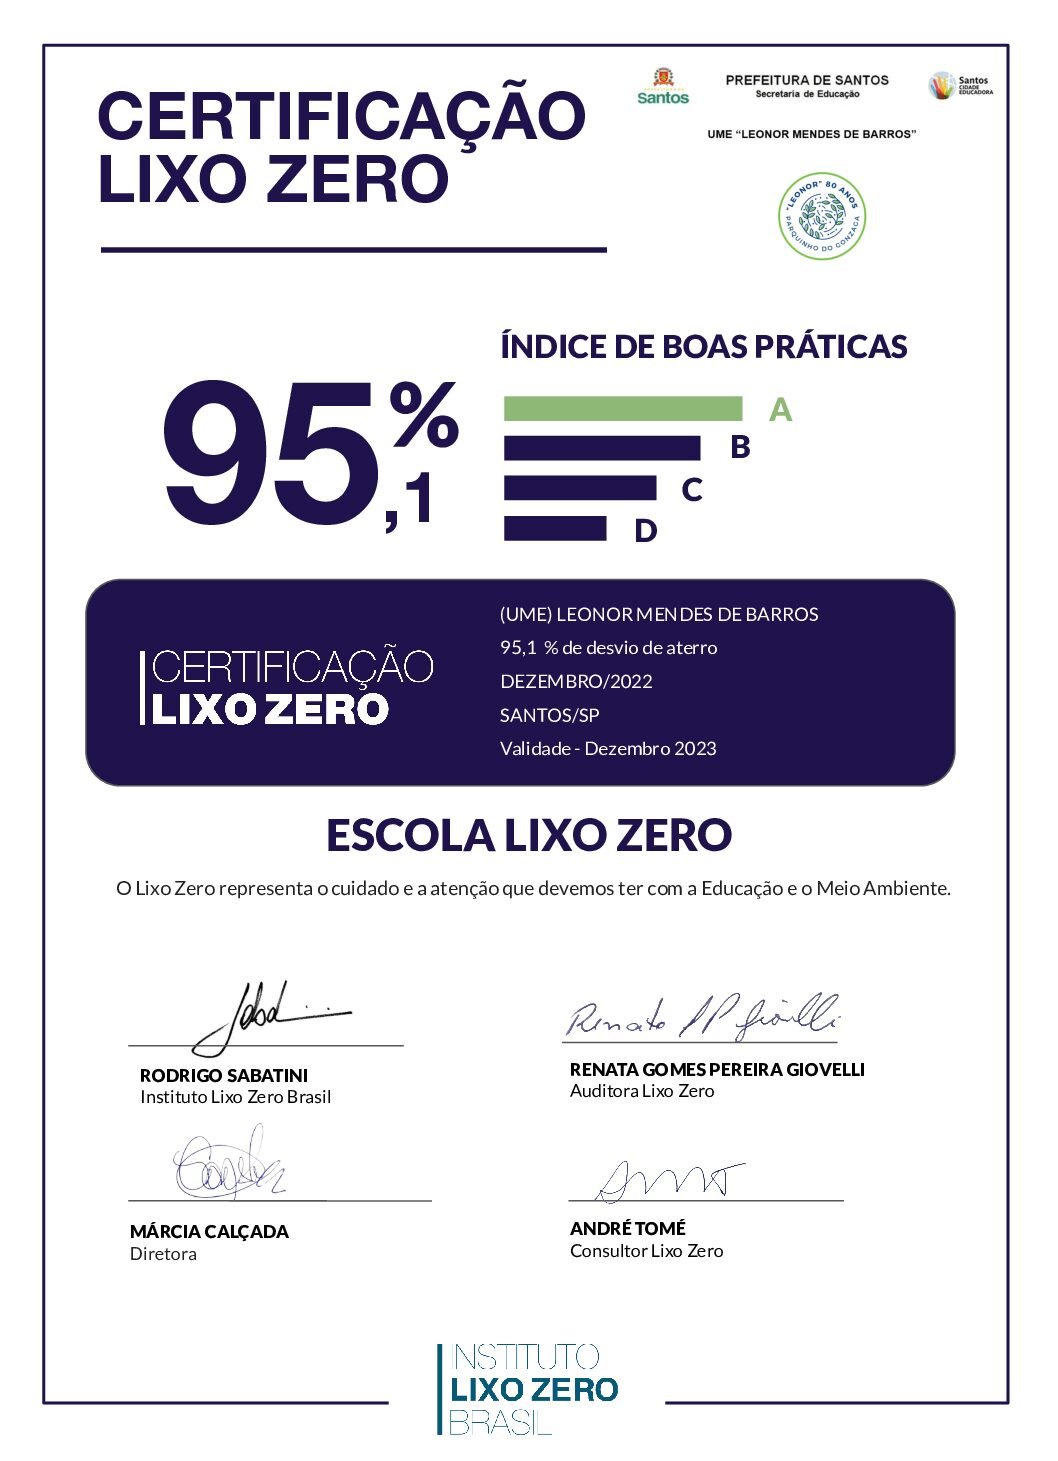 CertificacaoLixoZero_(UME) LEONOR MENDES DE BARROS (2)